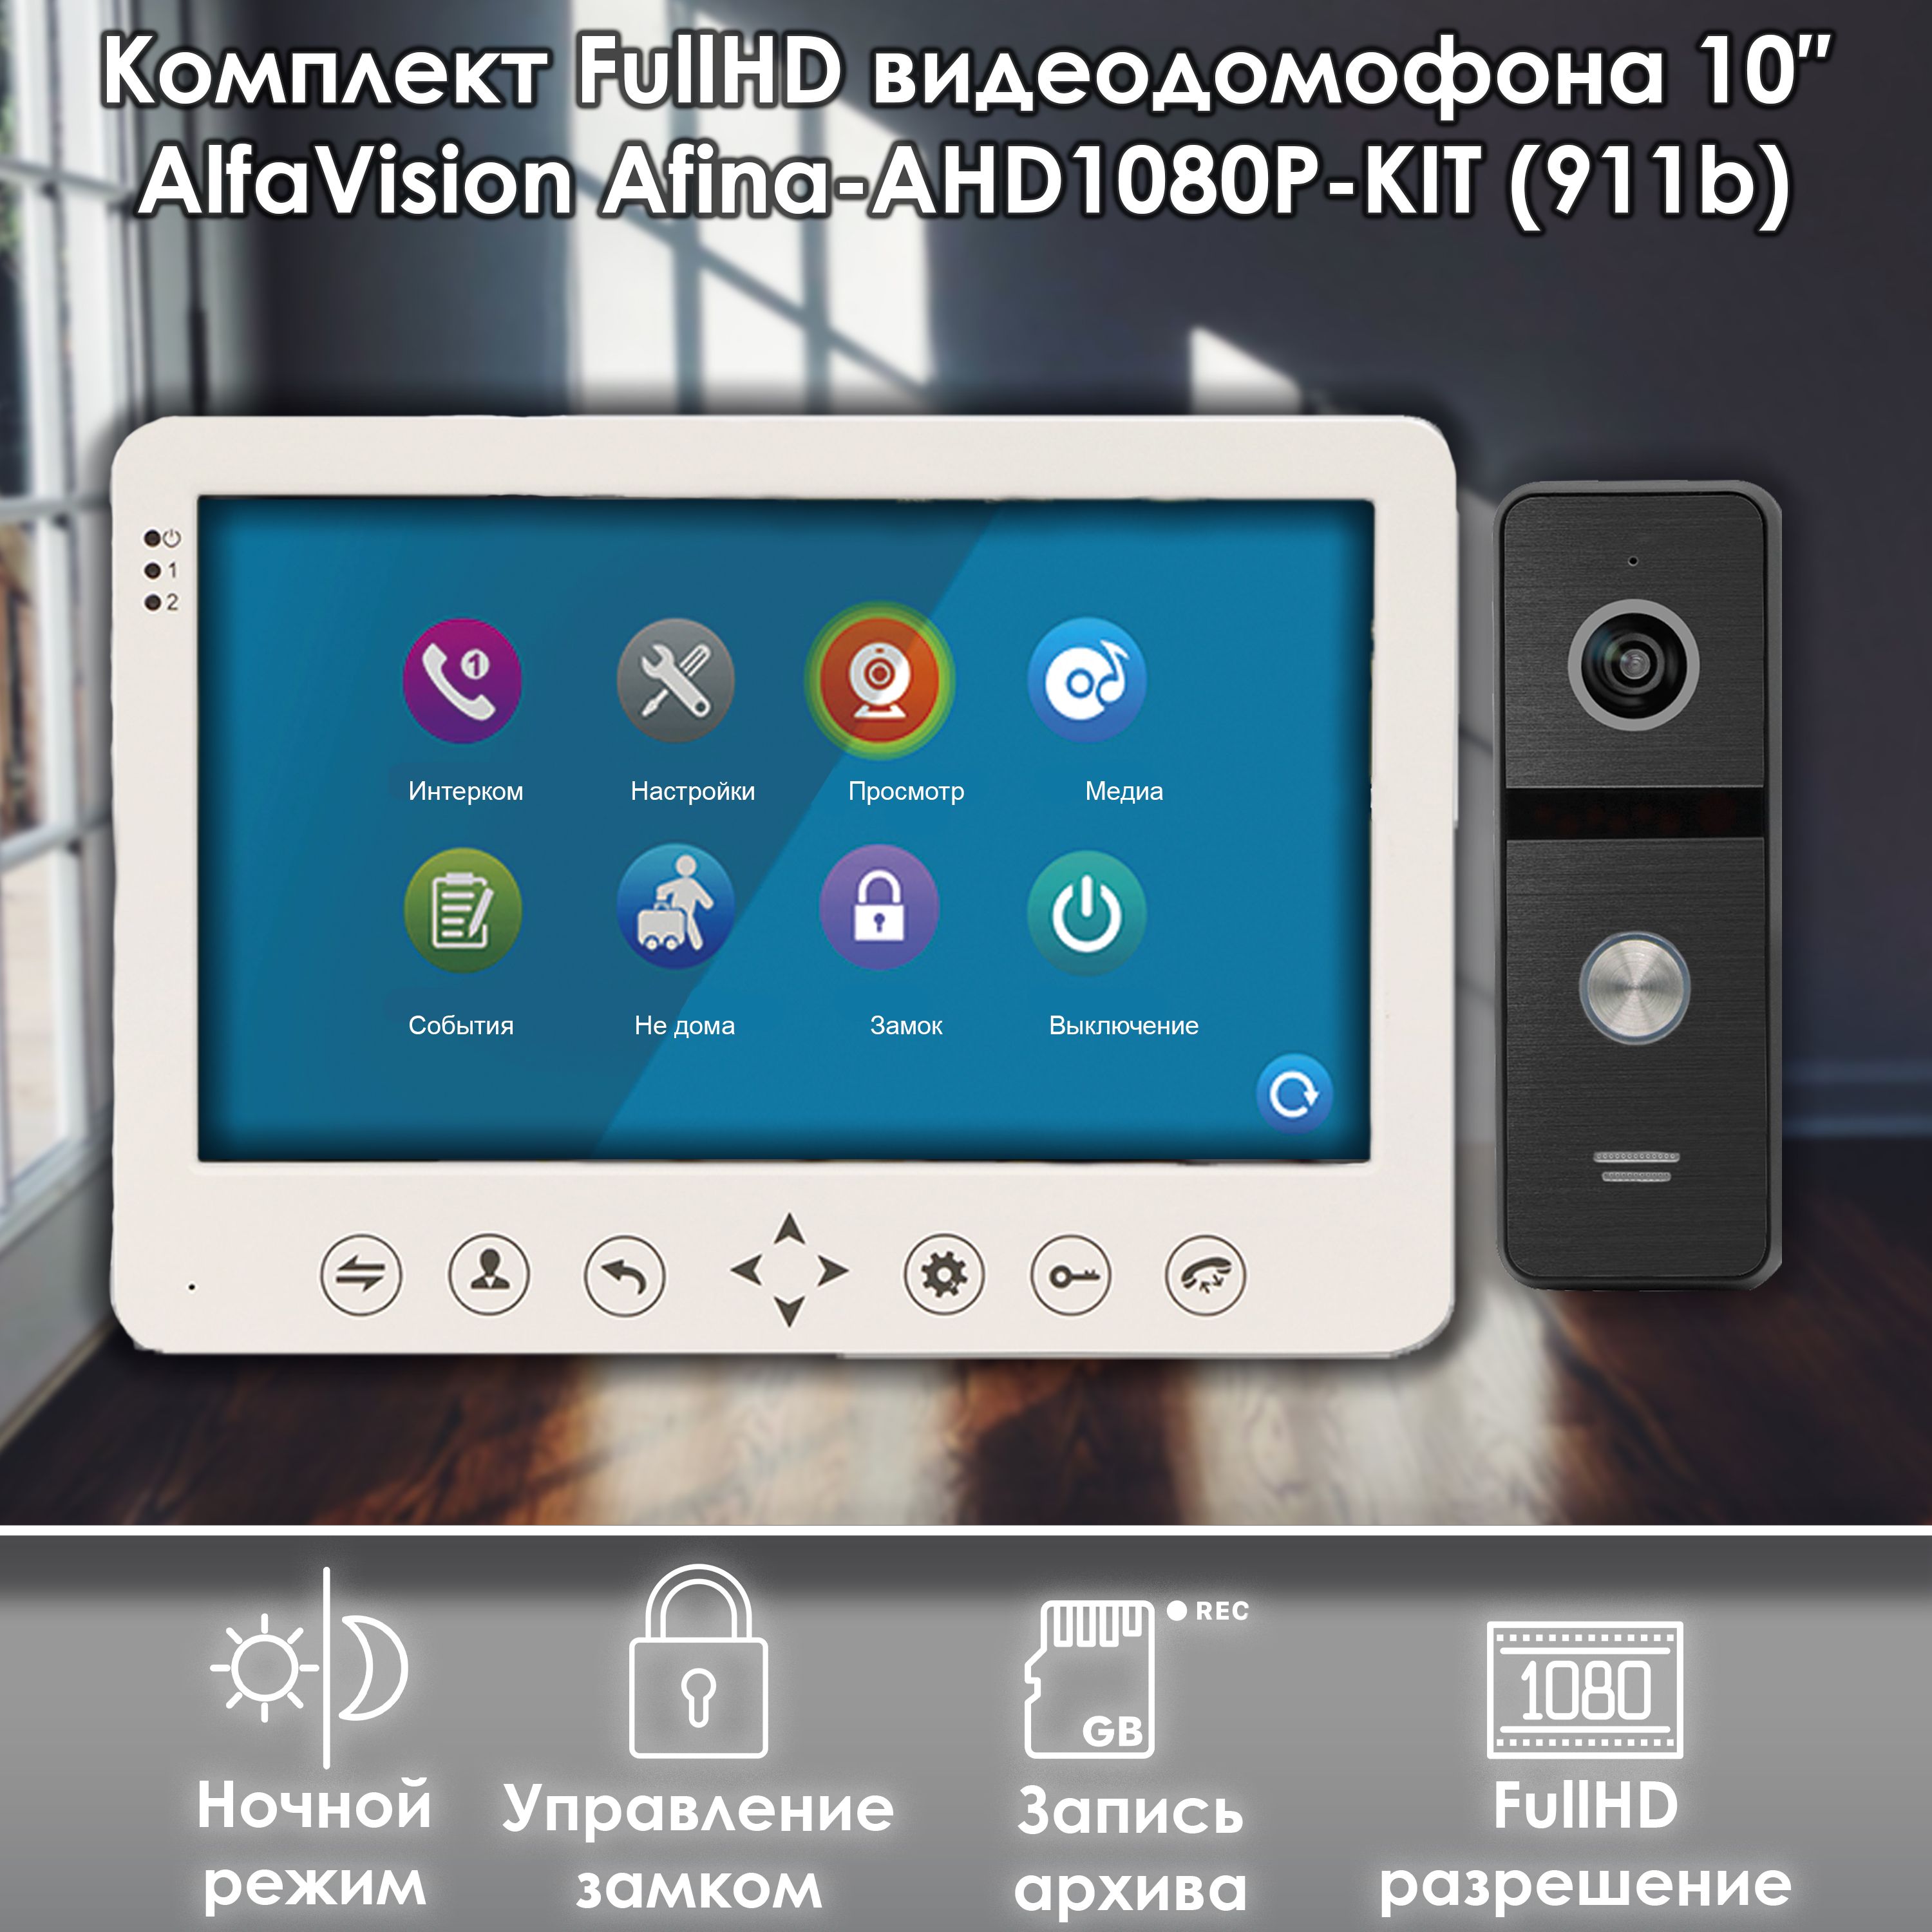 Комплект видеодомофона Alfavision AFINA-AHD1080P-KIT (911bl) Full HD, 10 дюймов